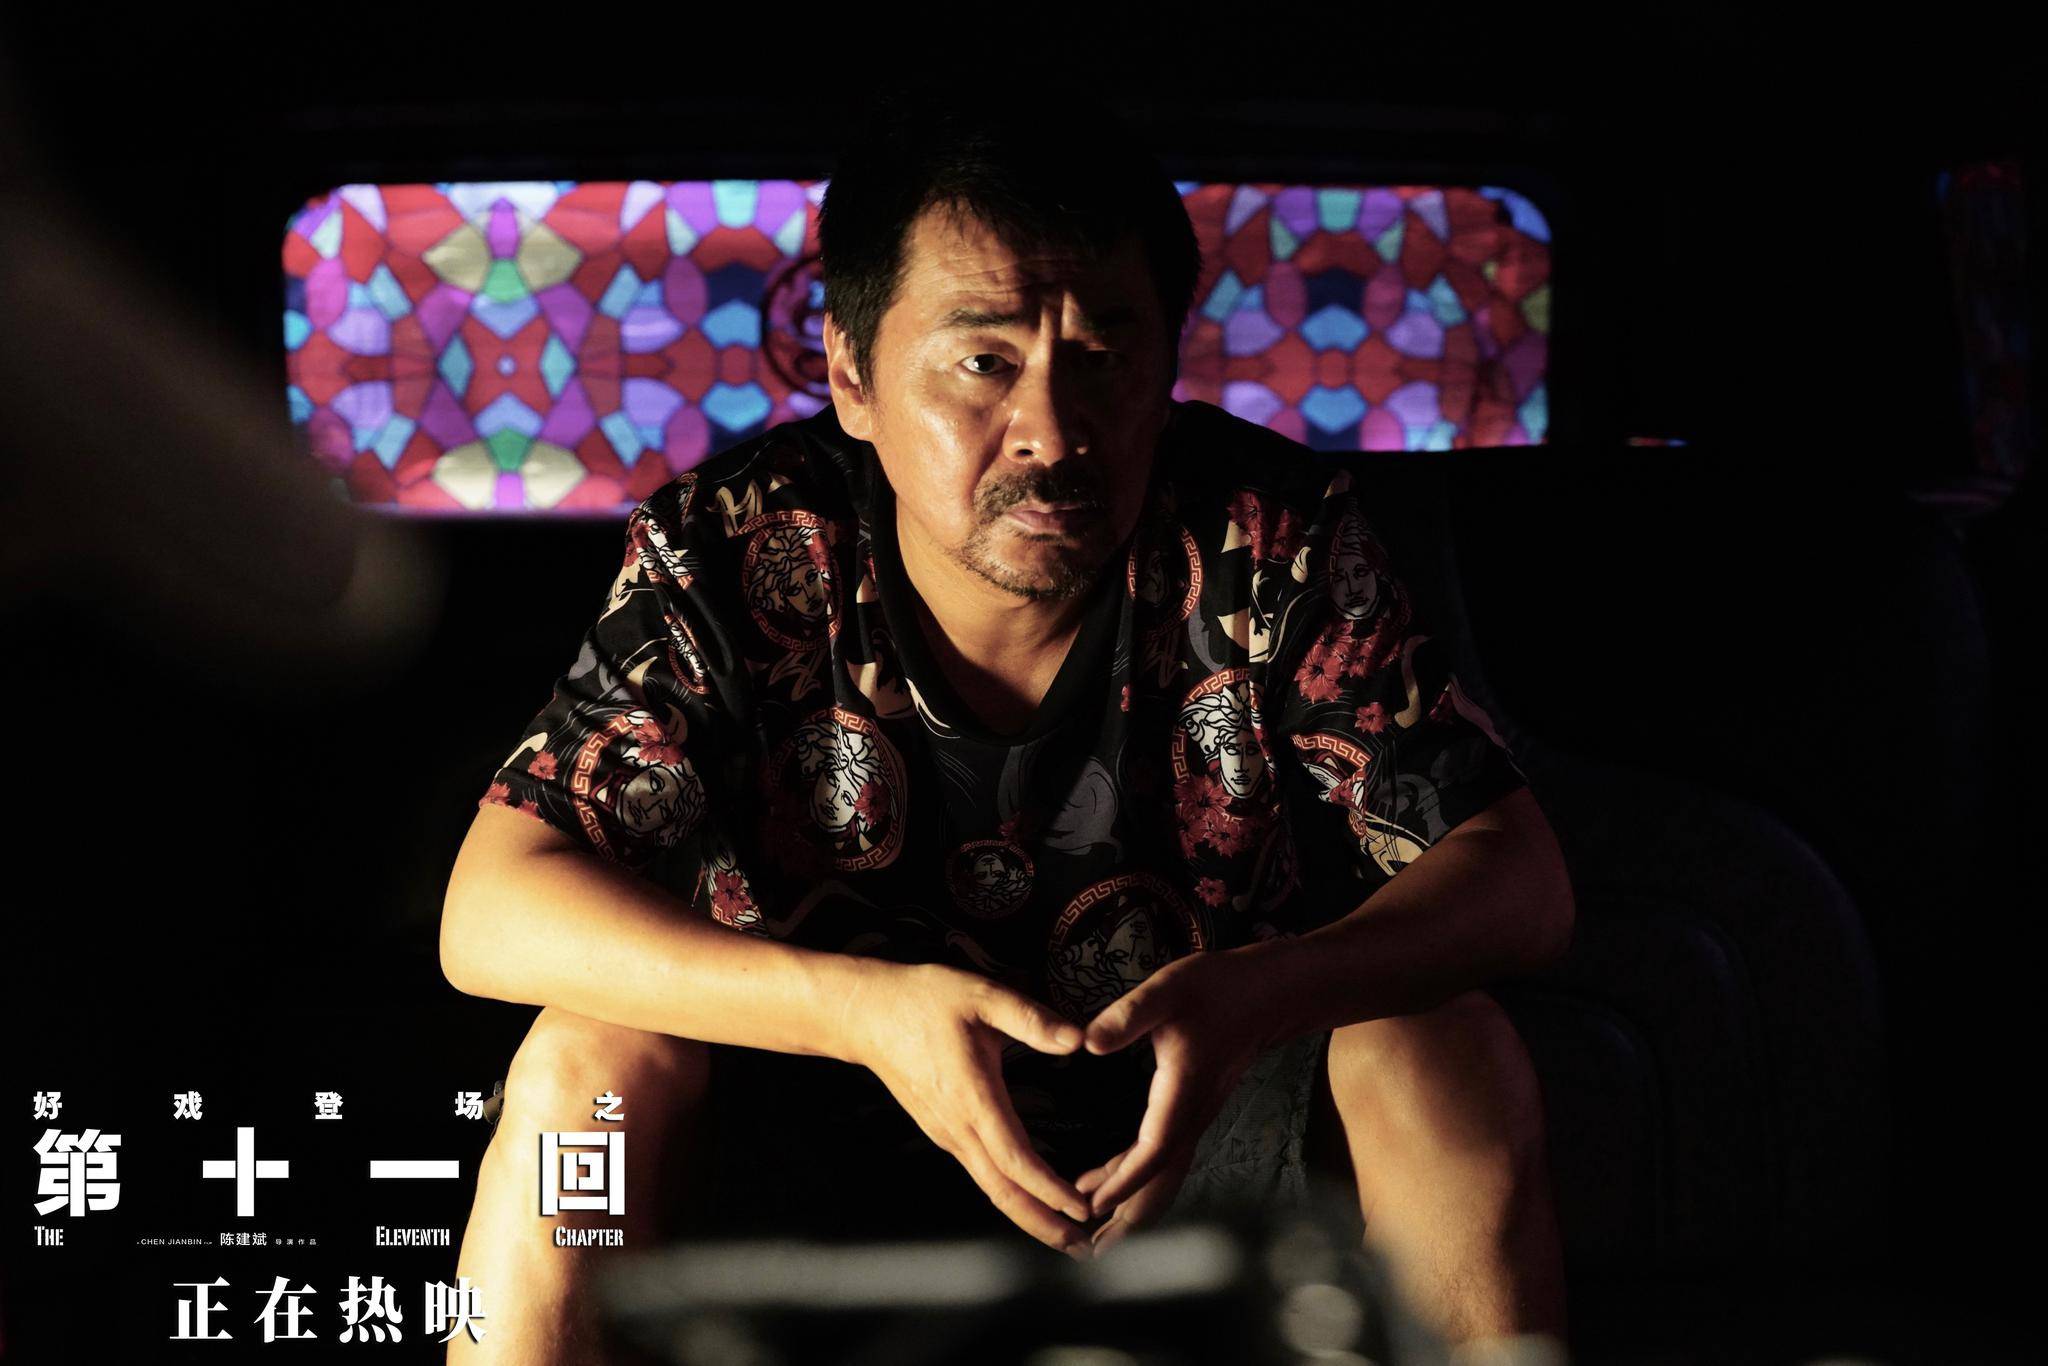 电影《十一》激发了人们对陈建斌送去生活的“甜豆腐”的深刻思考。